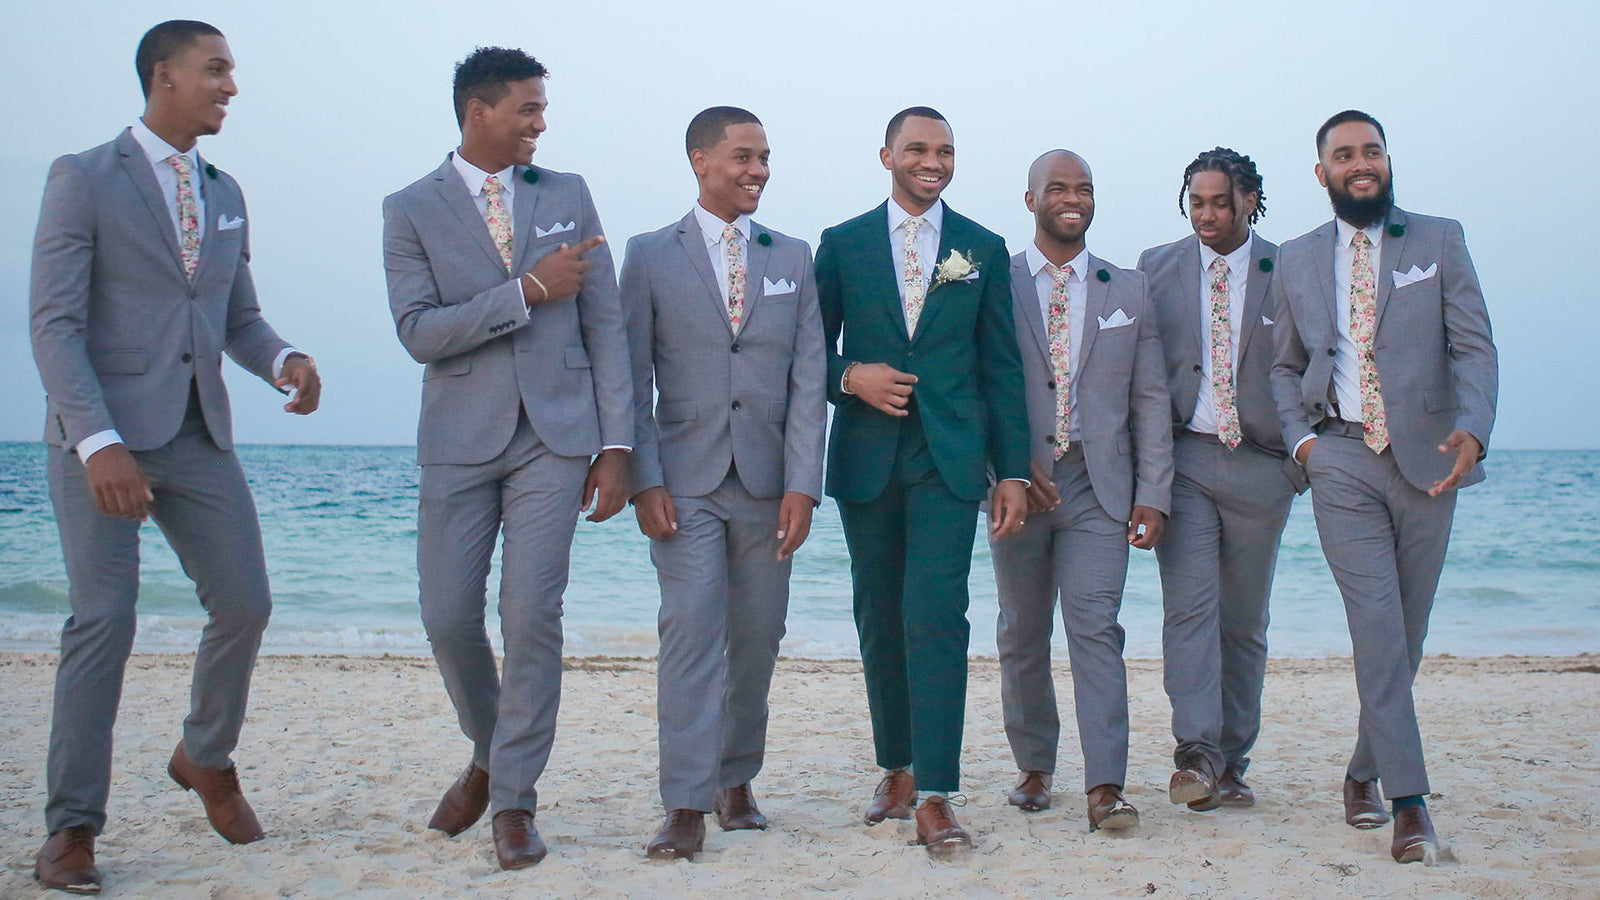 Men's 3 Piece Suit Set Wedding Brown Tuxedo Groomsmen Party Wear African  Custom Ivory Suit Jacket -  Canada